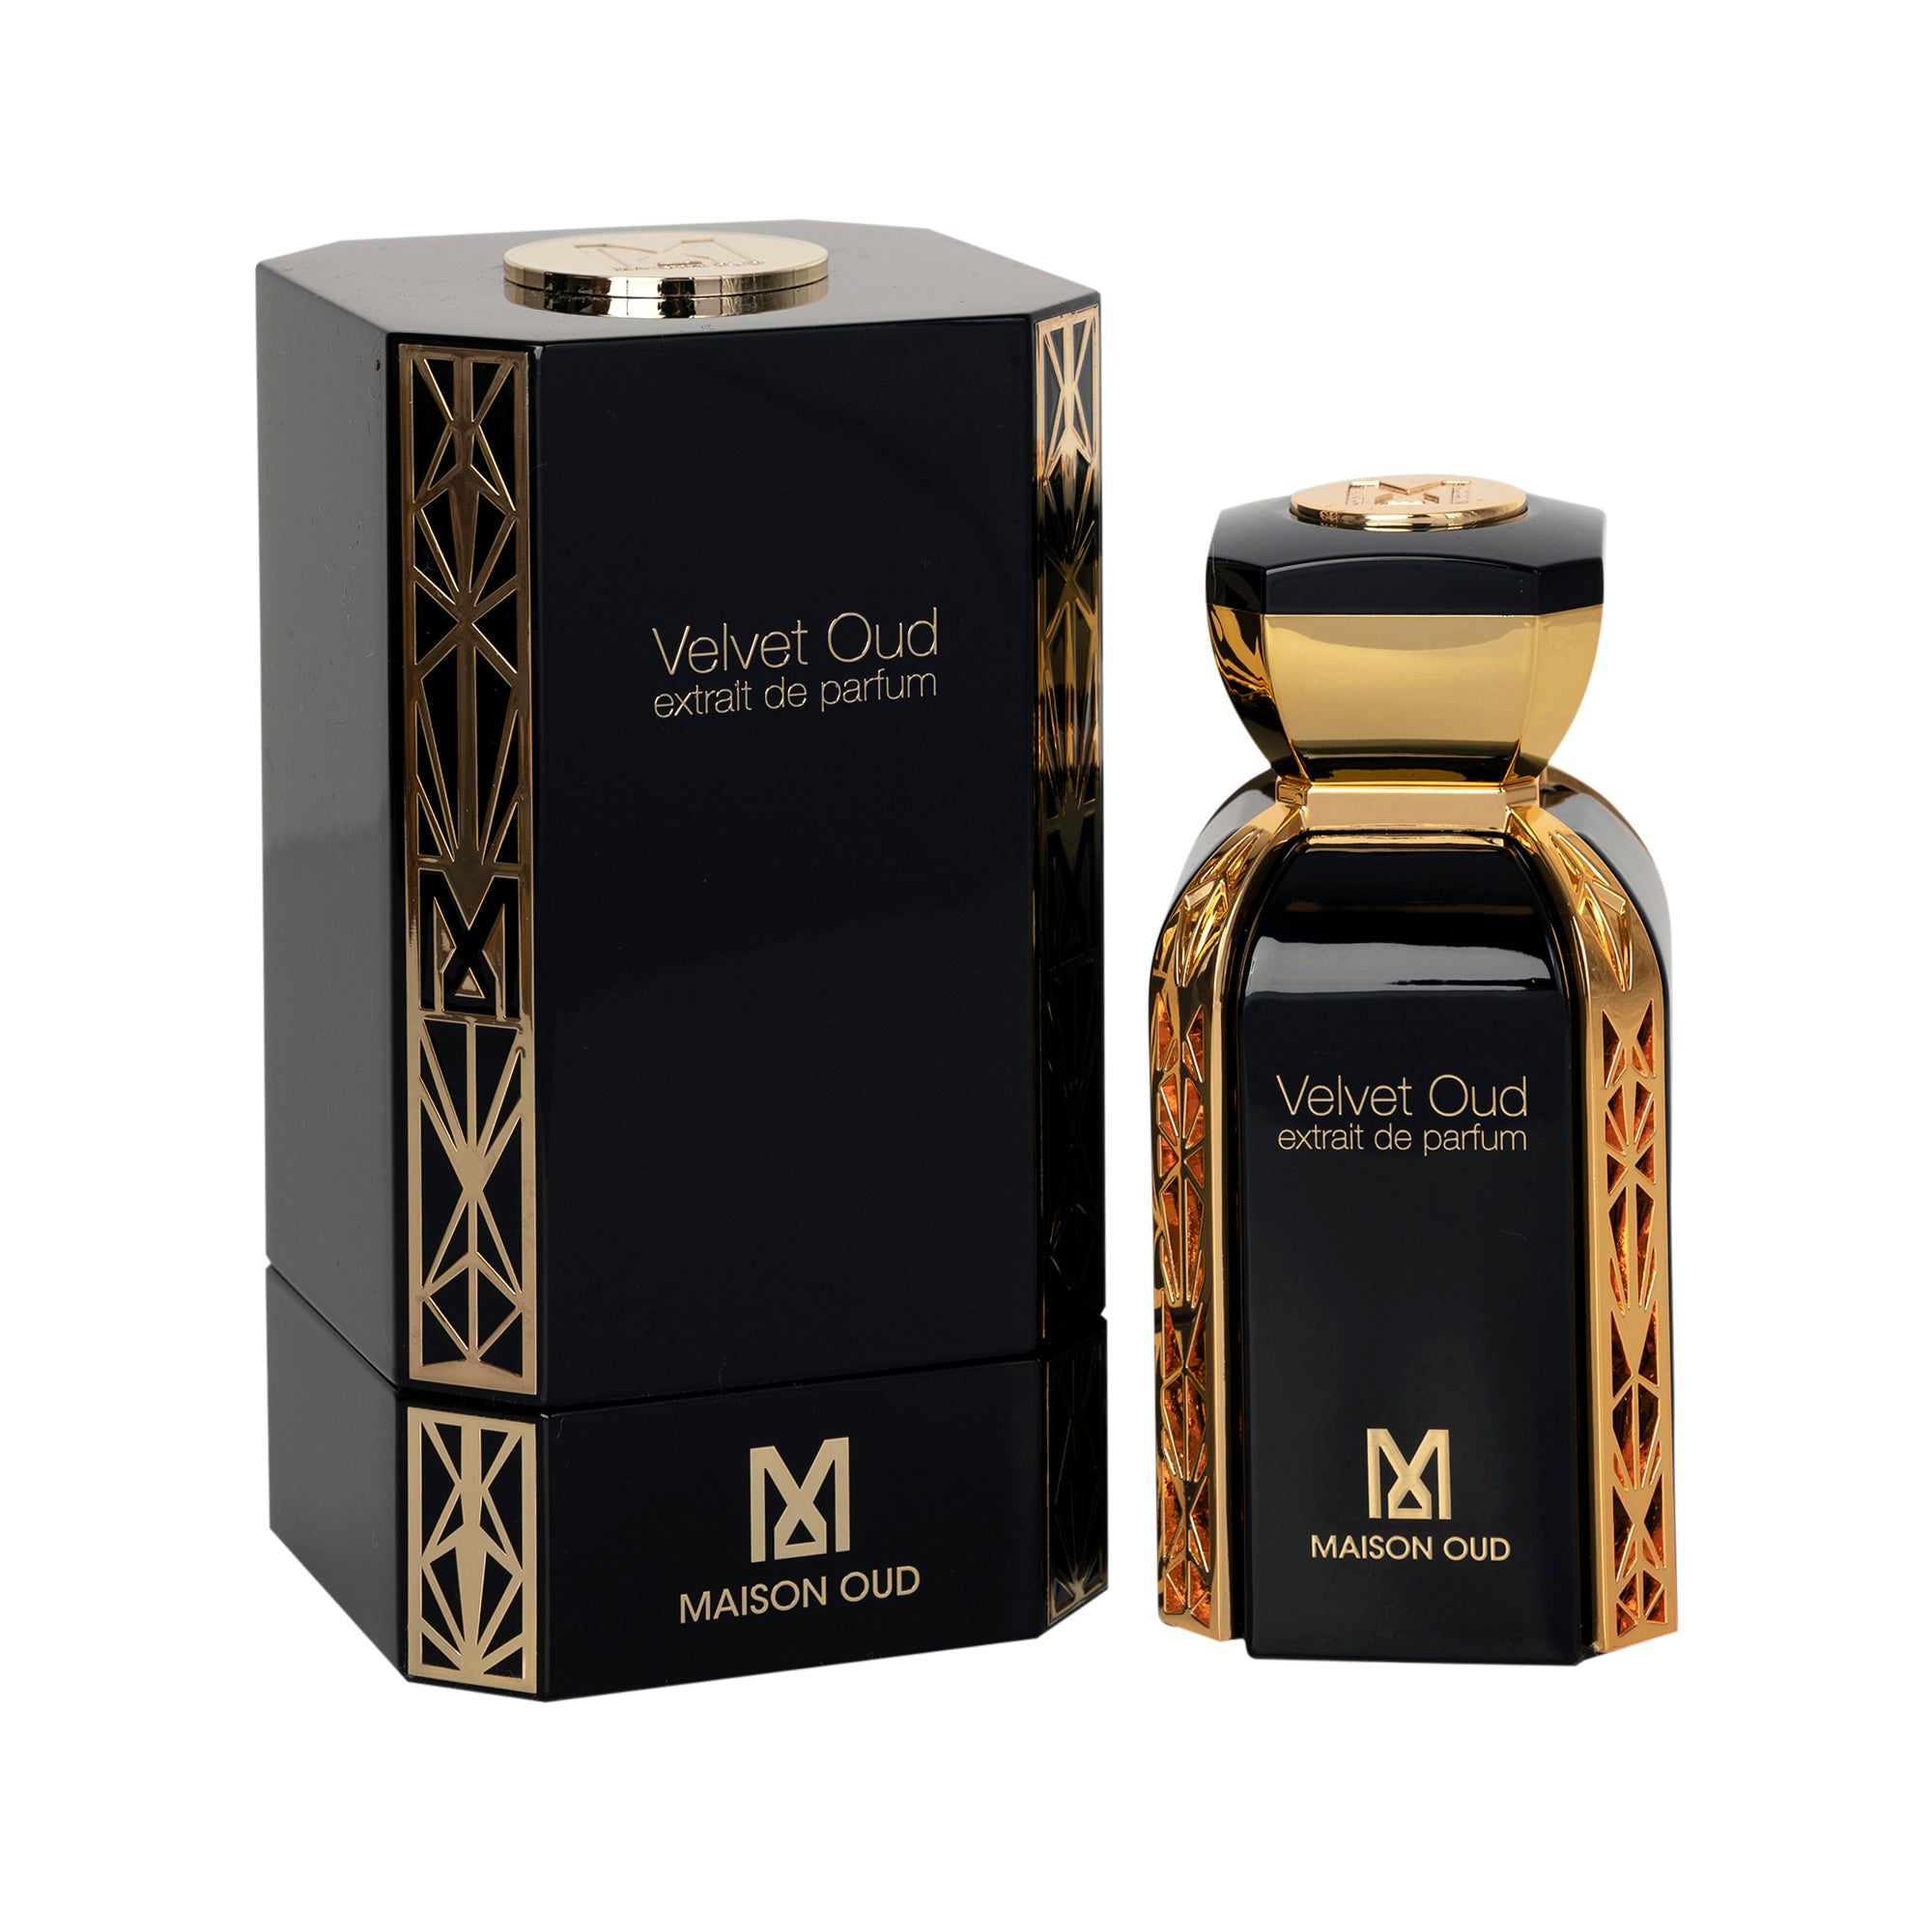 Maison Oud Velvet Oud Extrait De Parfum 75ml